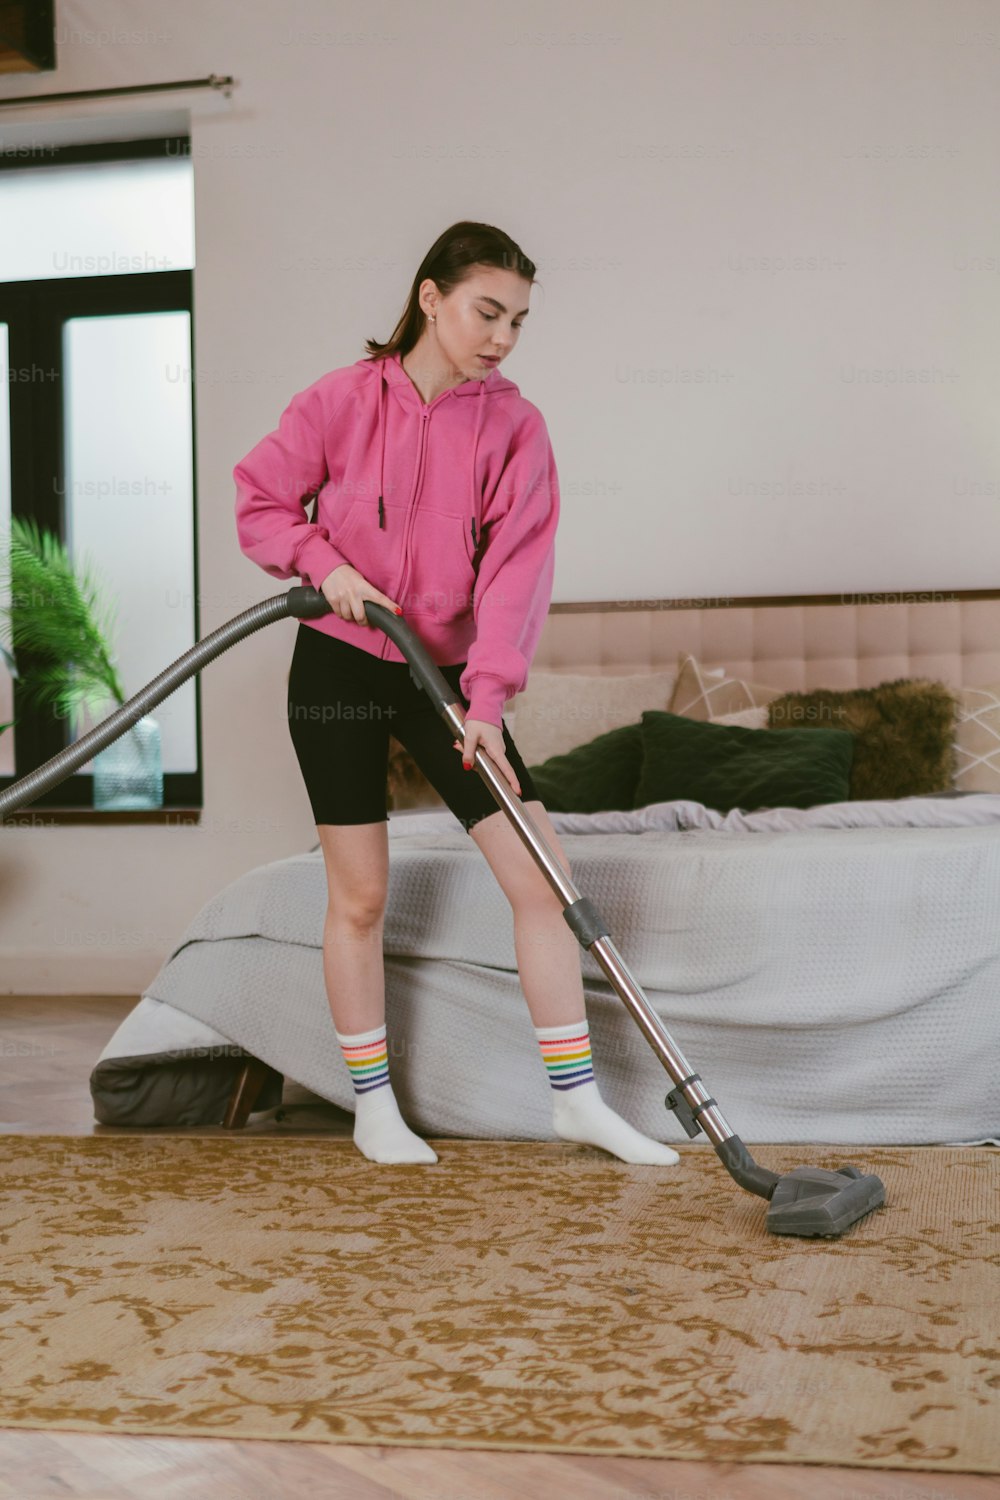 ベッドを掃除機で掃除するピンクのパーカーを着た女性